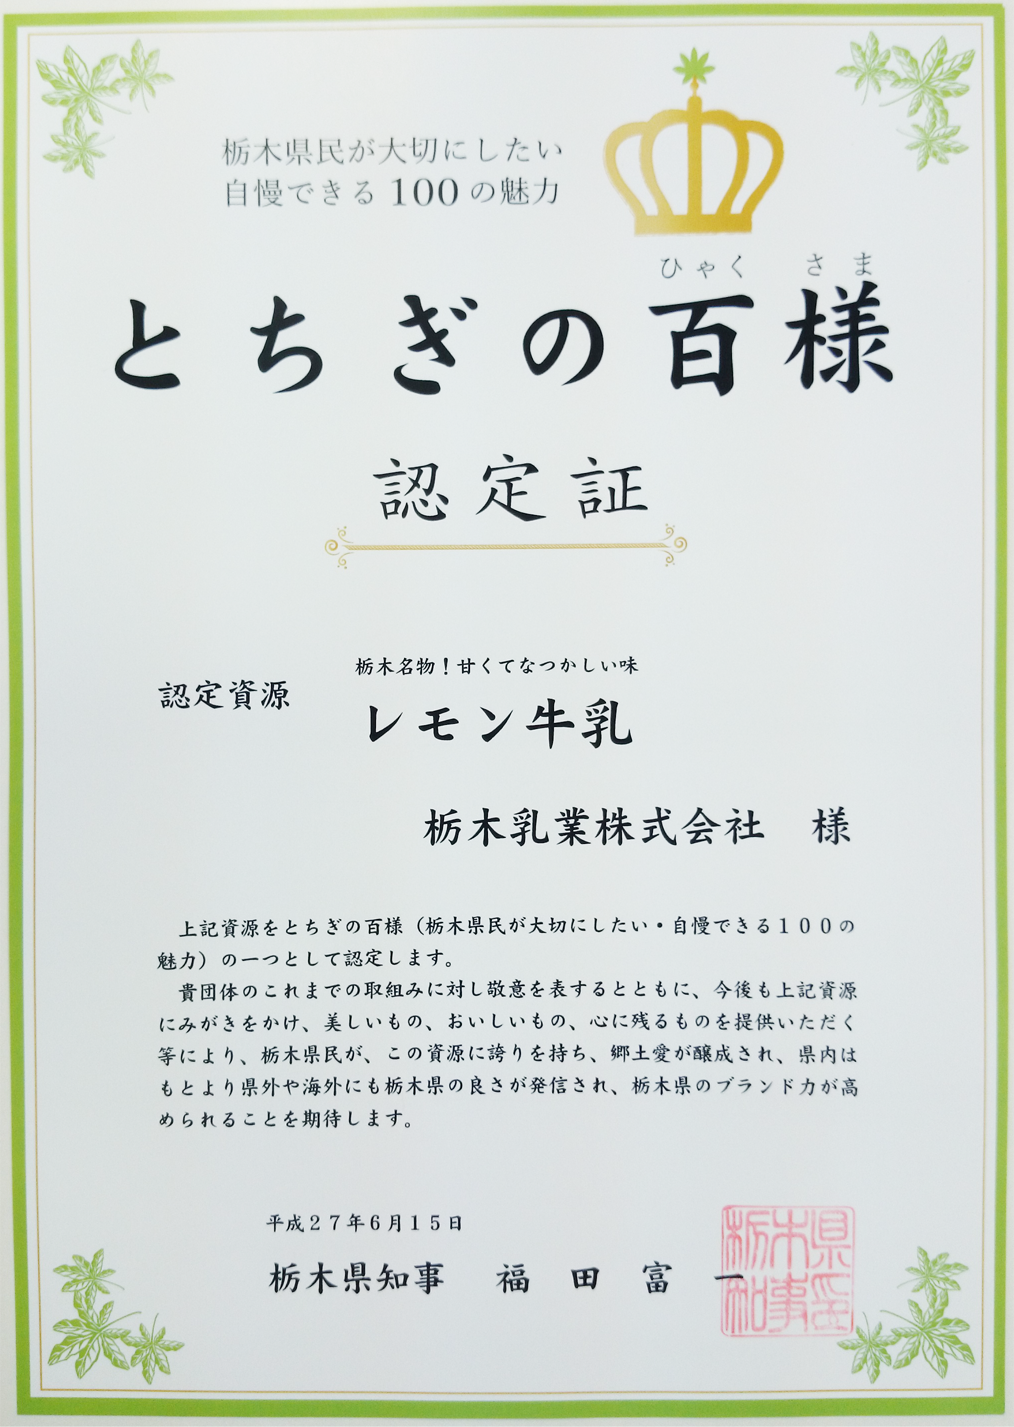 関東・栃木レモンが栃木県「とちぎの百様」に認定されました